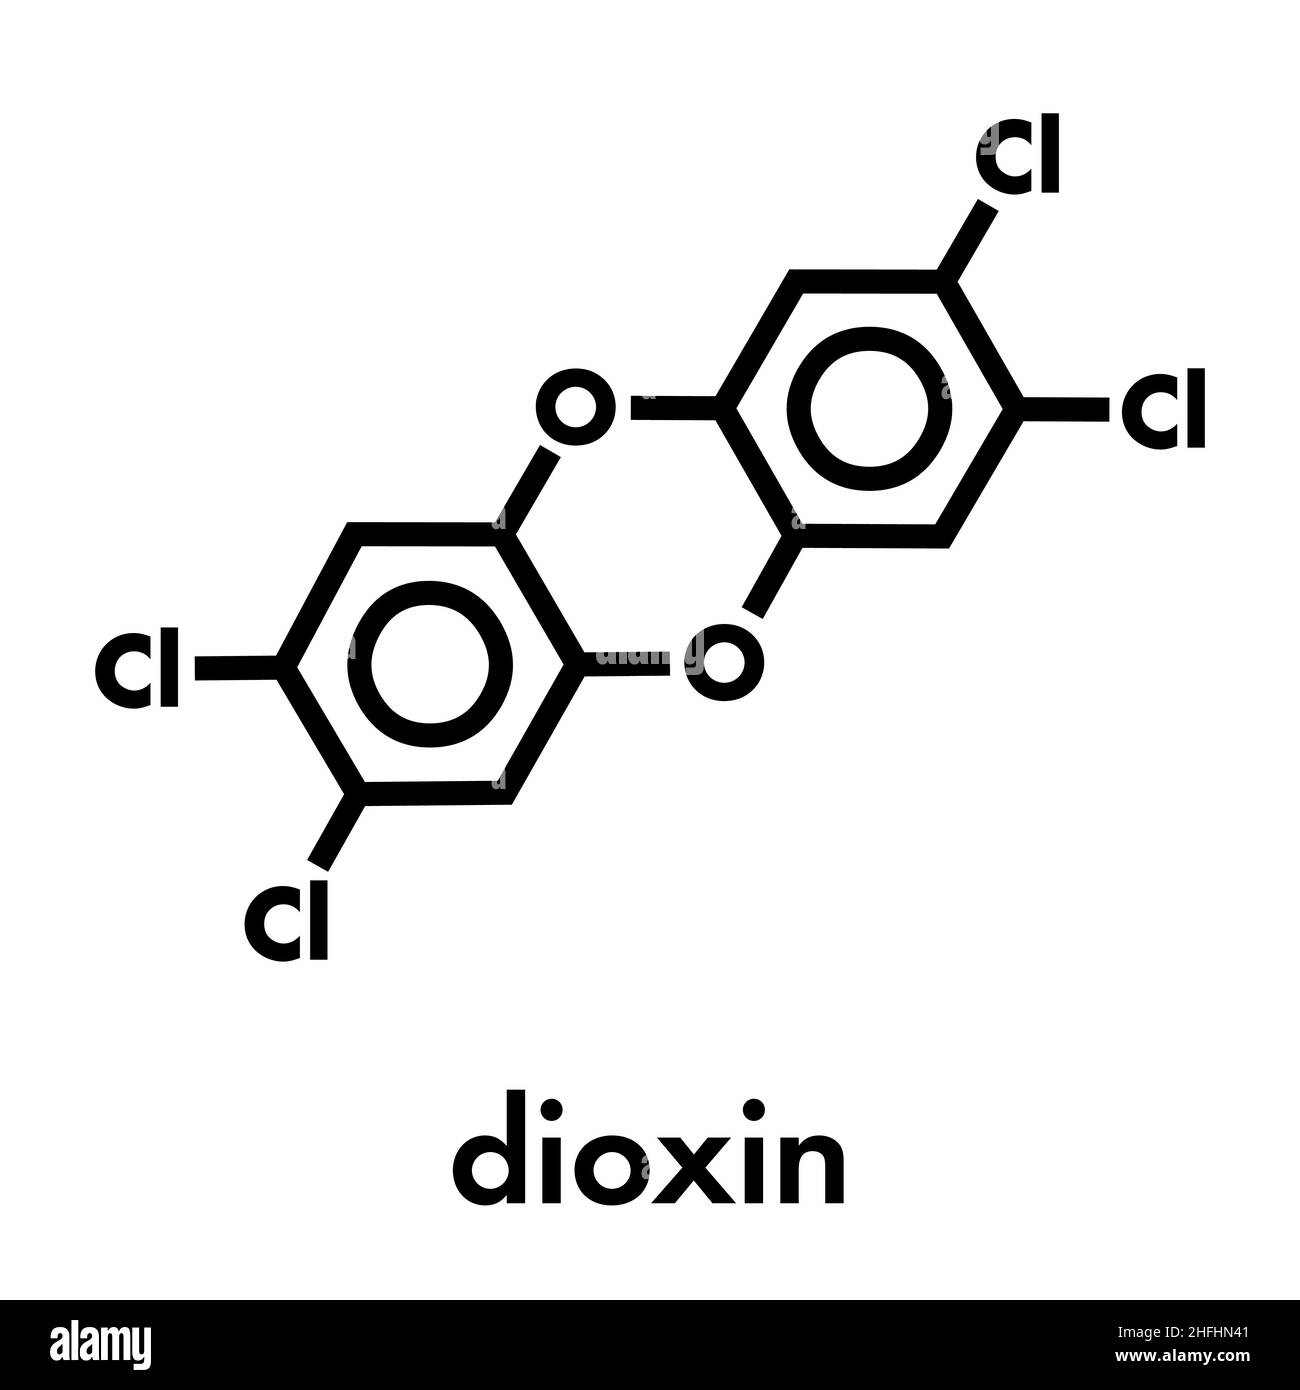 TCDD polychlorierte Dibenzodioxin Schadstoff Molekül (gemeinhin als Dioxin). Nebenprodukt gebildet während der Verbrennung von chlorhaltigen Materialien. Stock Vektor